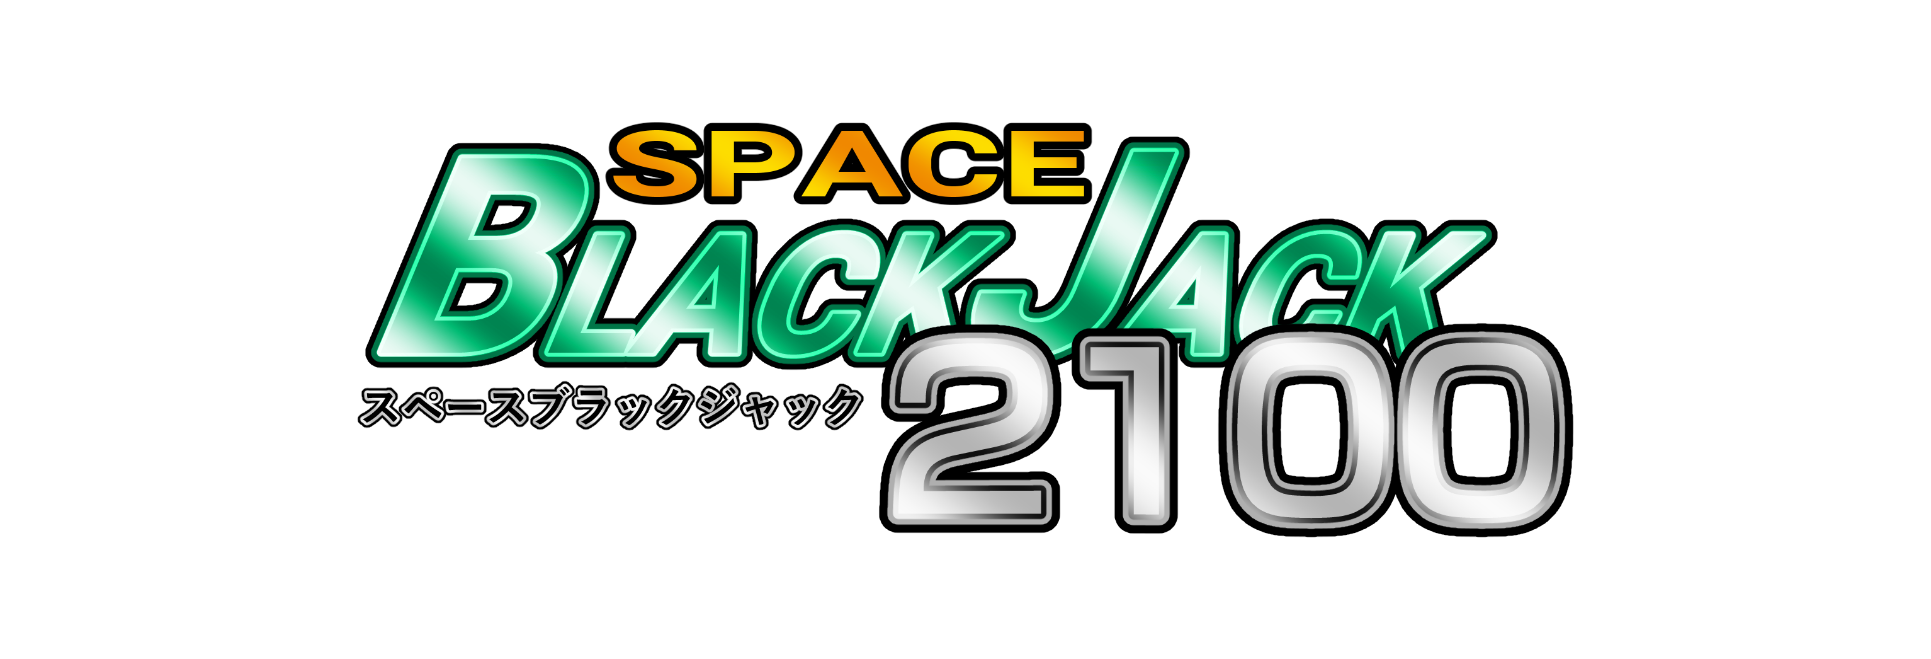 Space BlackJack 2100